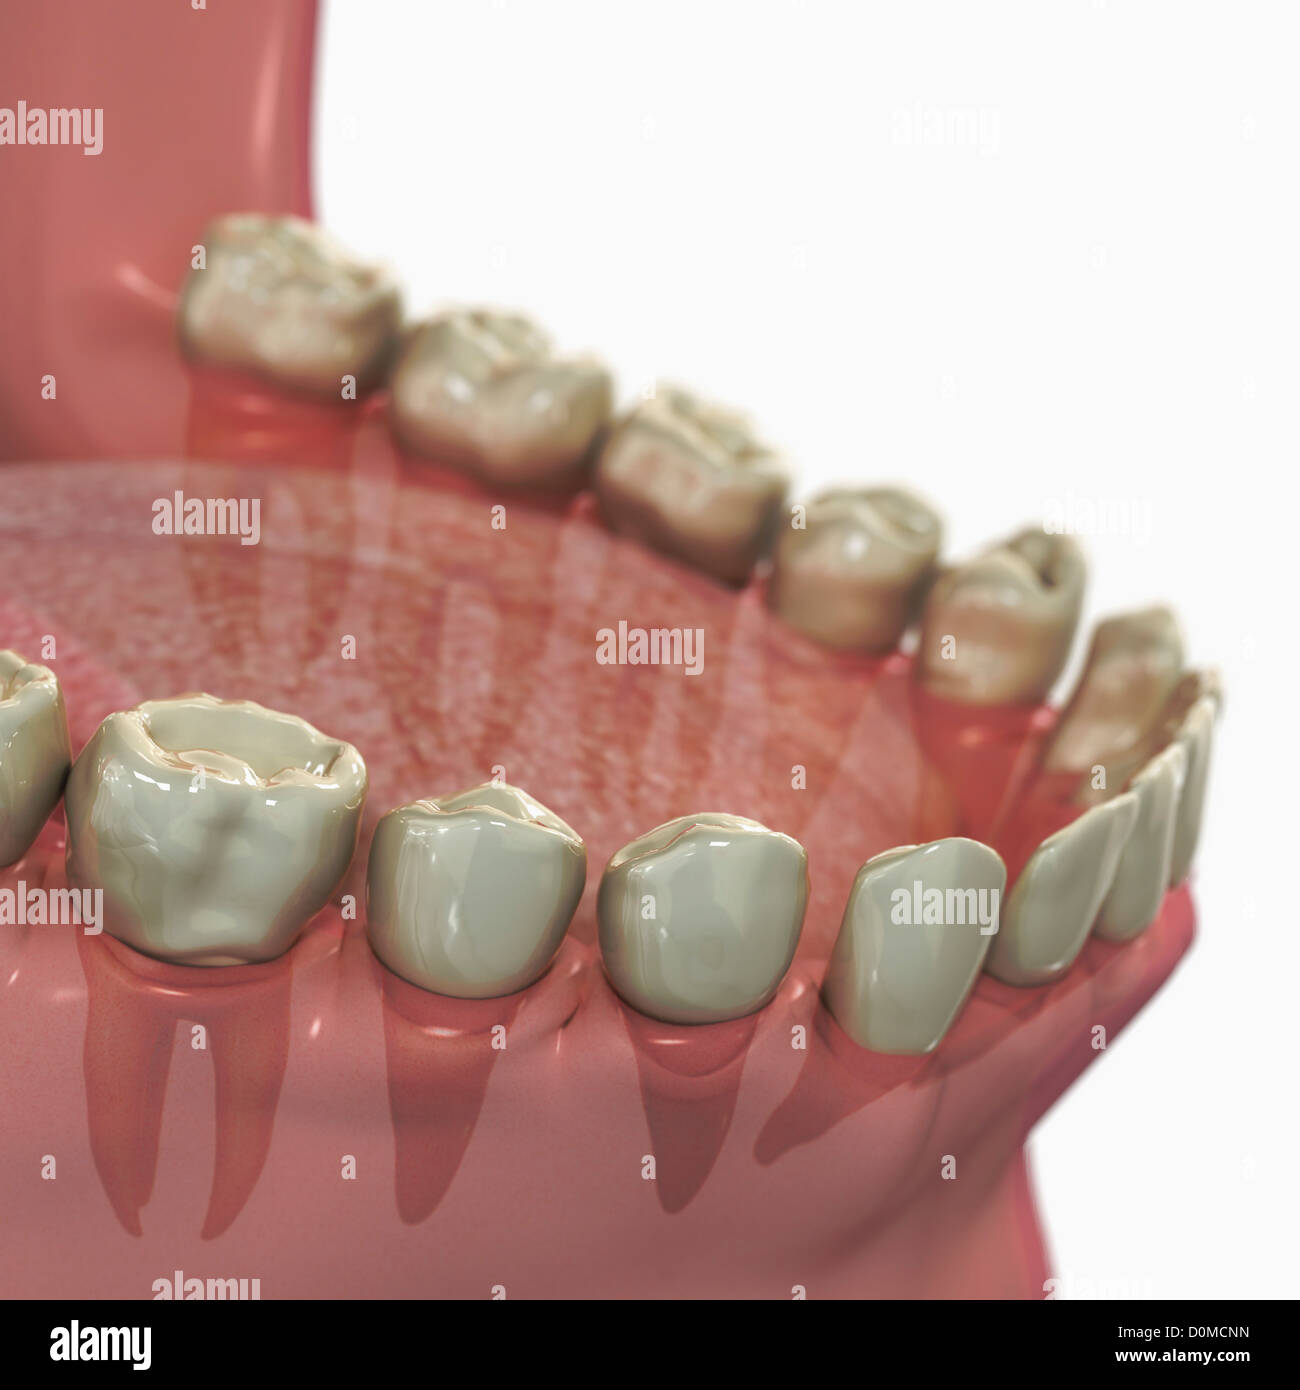 Modelo anatómico mostrando los dientes inferiores. Foto de stock